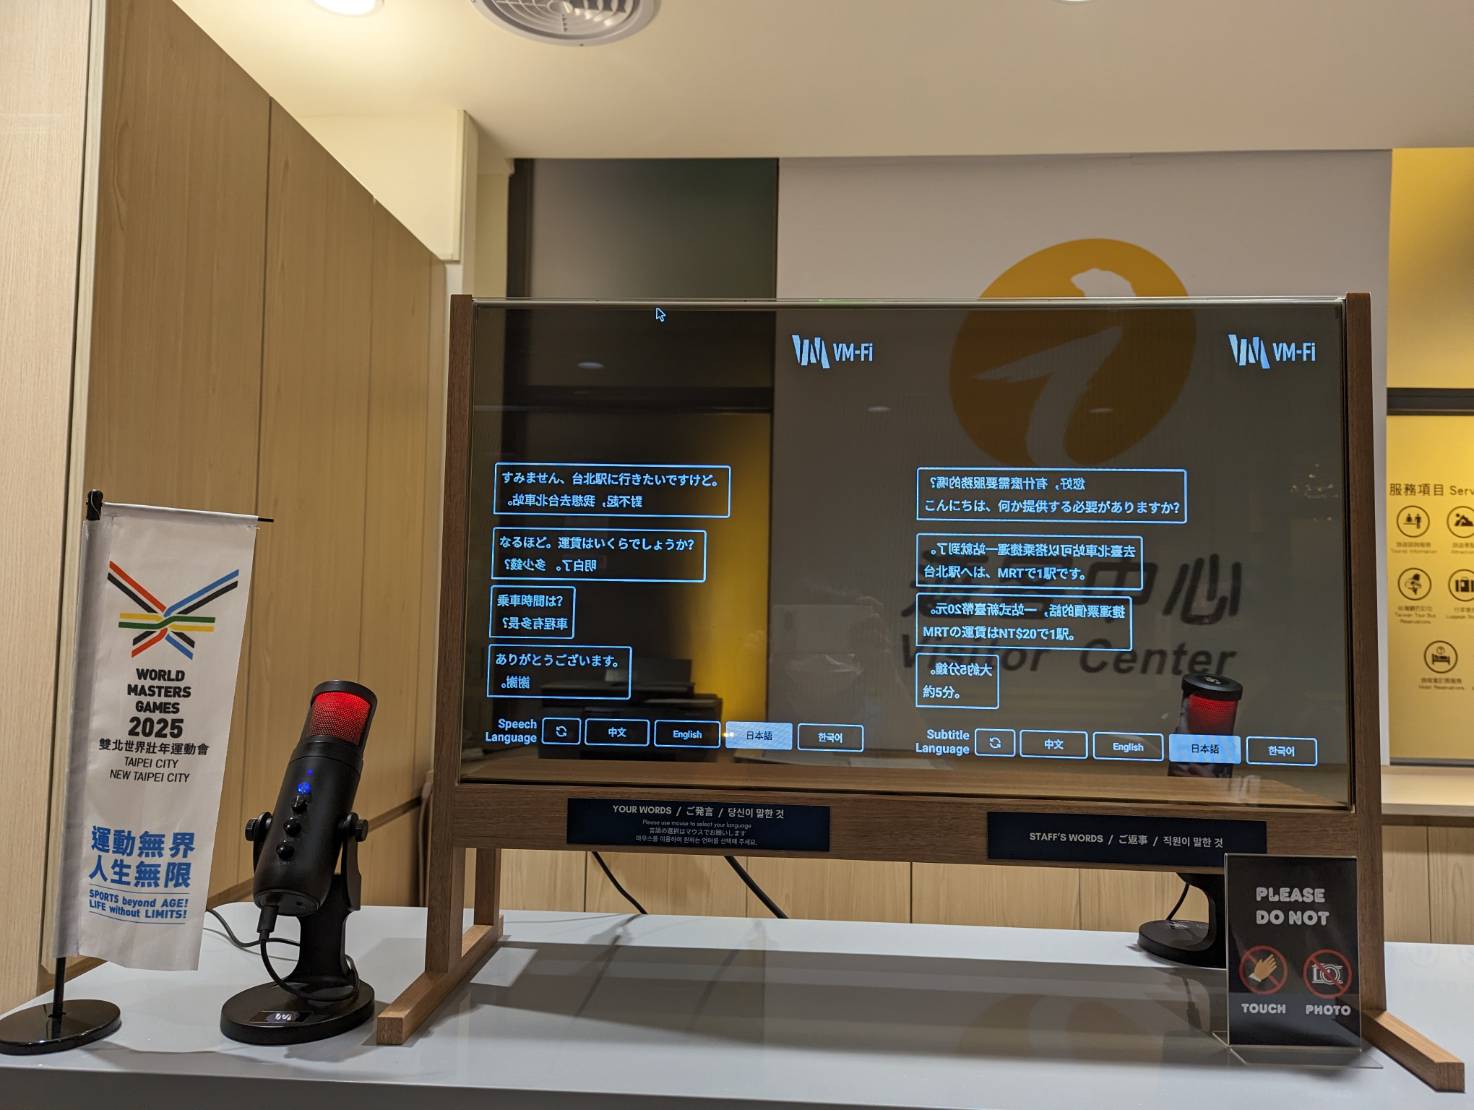 西門町遊客中心於台北燈節期間首次設置AI「智慧翻譯透明面板」即時翻譯服務。